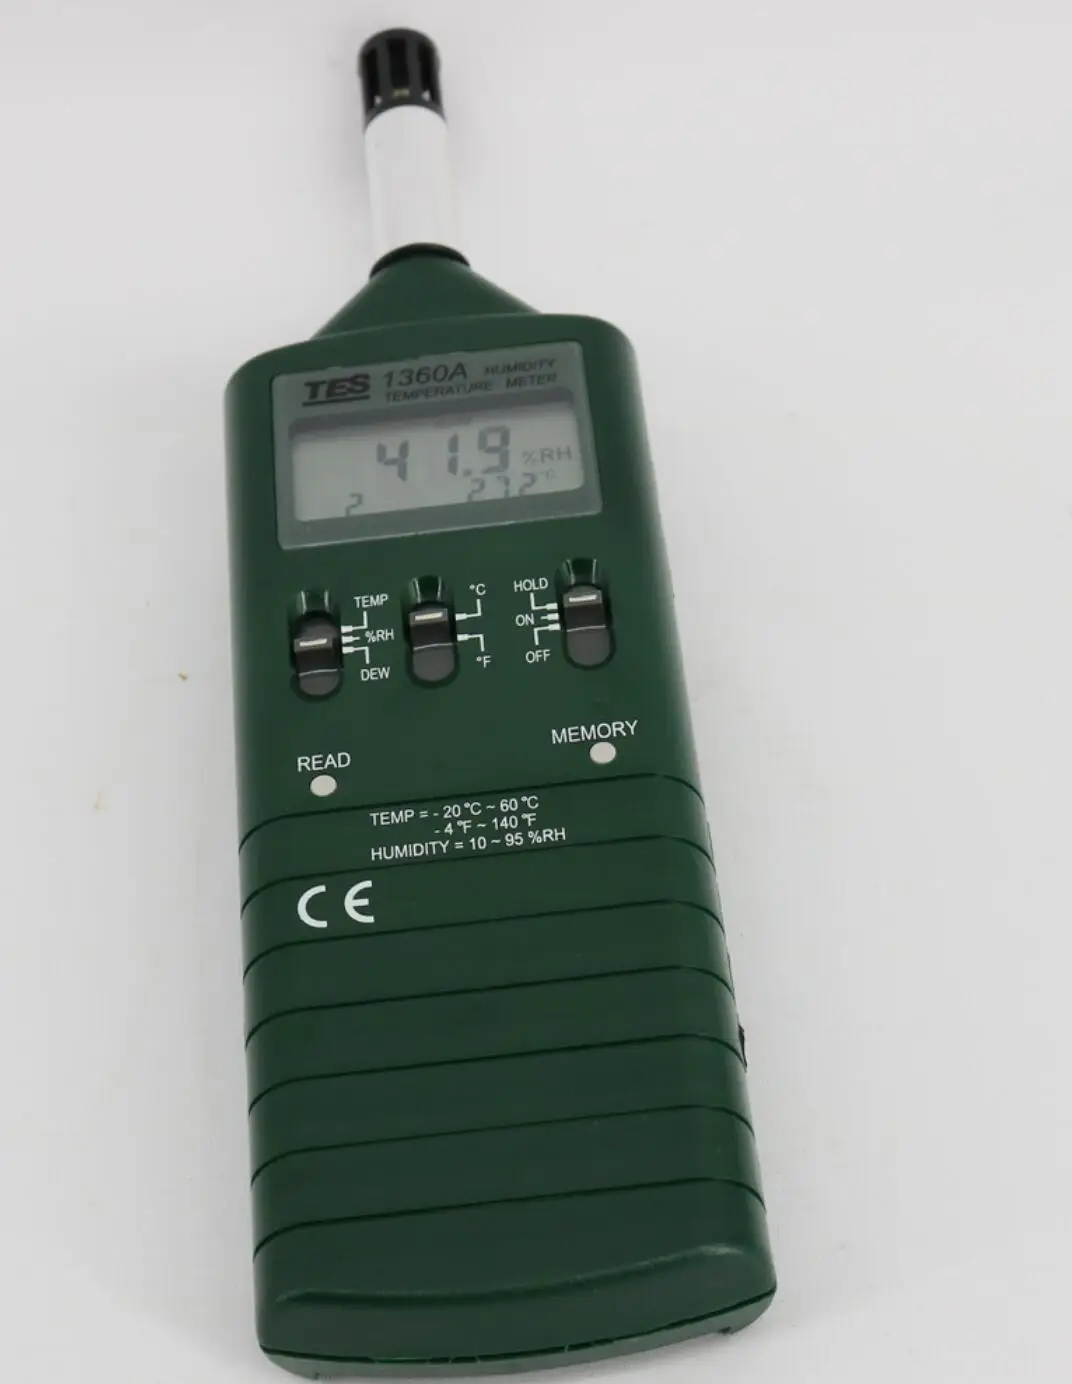 

TES-1360A Humidity Temperature Meter Dual display 10%RH 95%RH 0.1C/F/0.1%RH